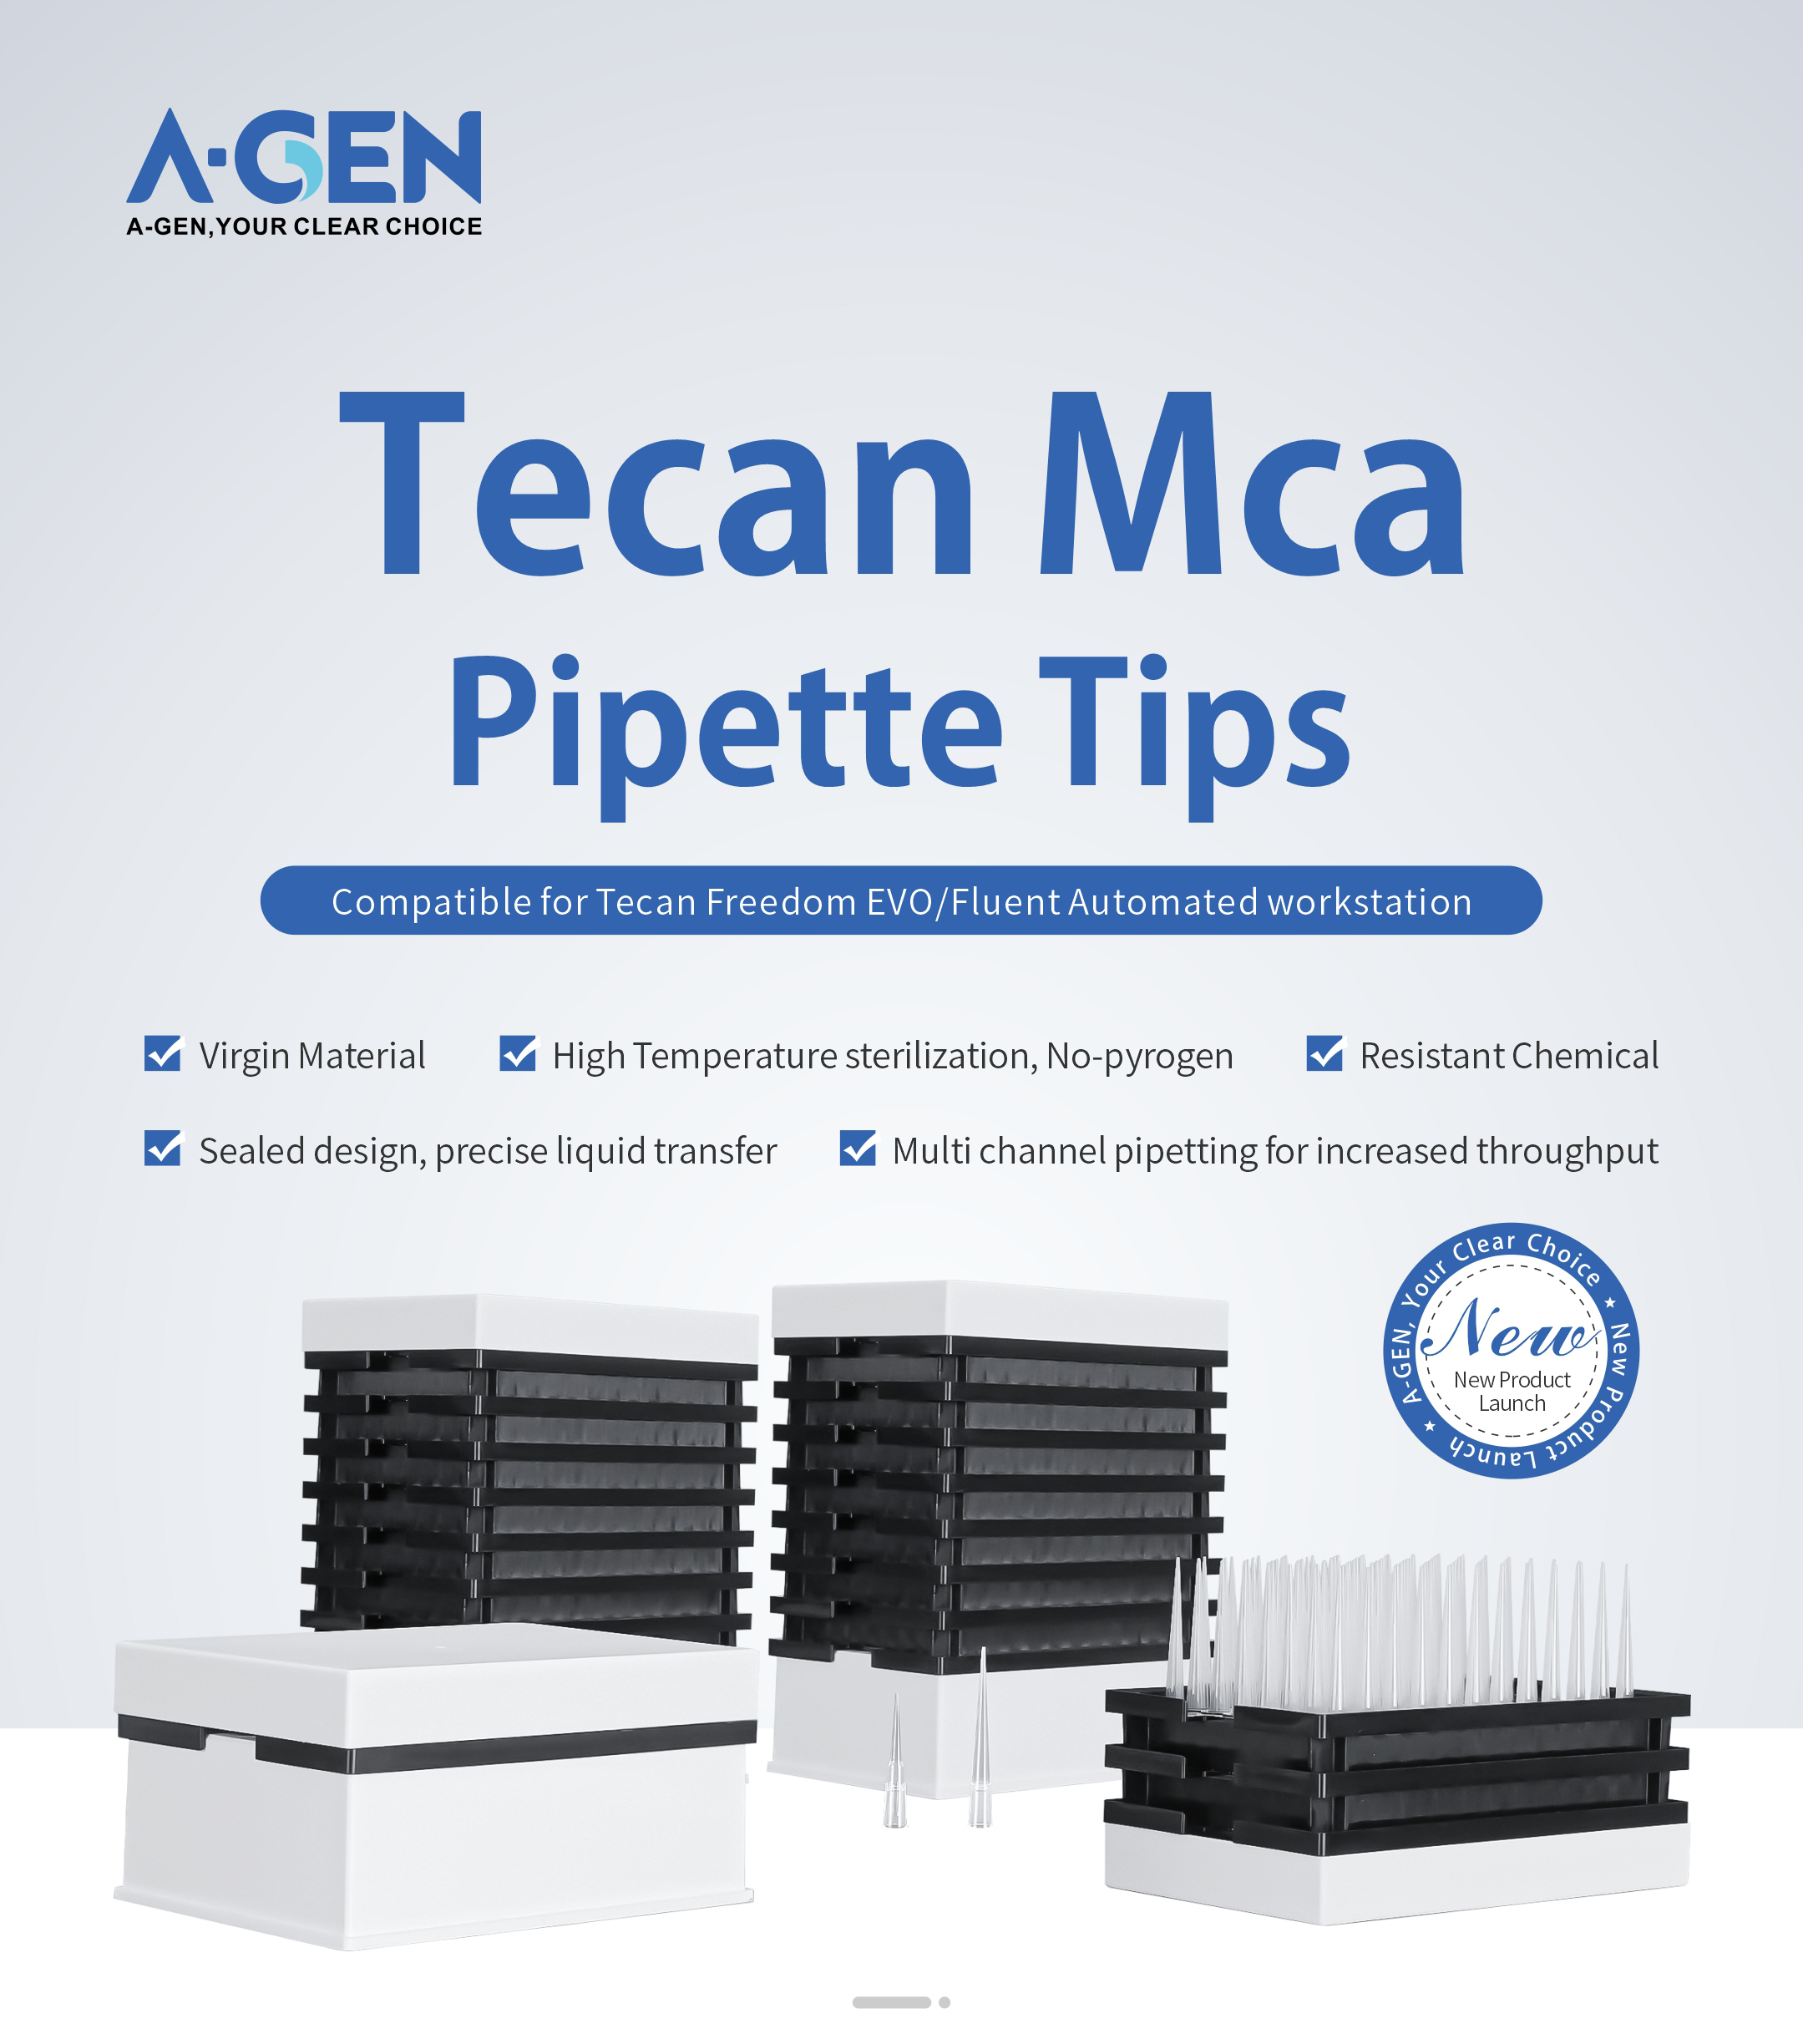 Tecan Mca pipette tips